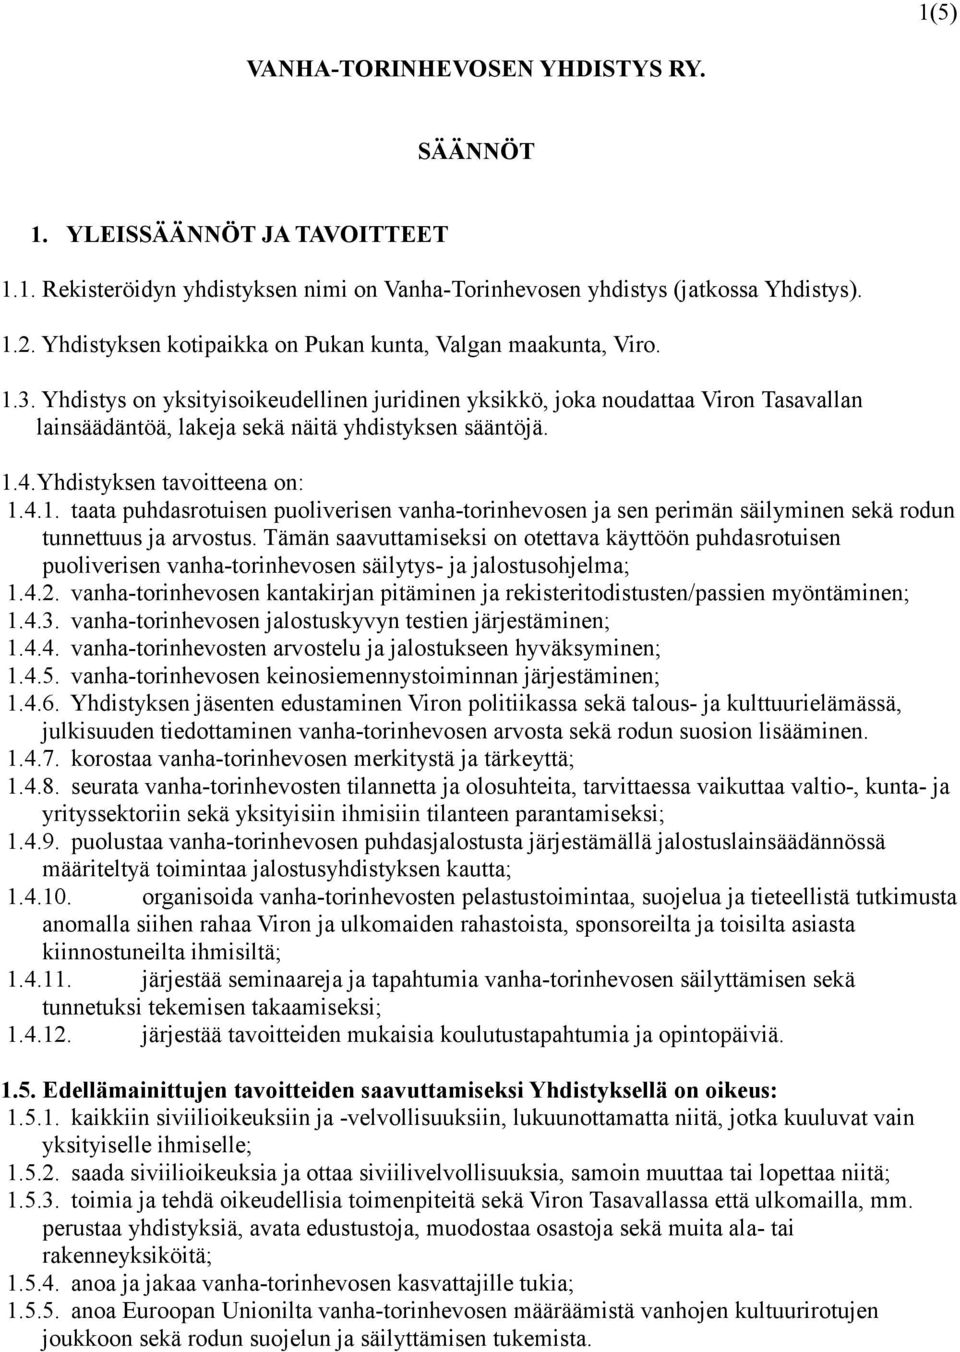 Yhdistys on yksityisoikeudellinen juridinen yksikkö, joka noudattaa Viron Tasavallan lainsäädäntöä, lakeja sekä näitä yhdistyksen sääntöjä. 1.